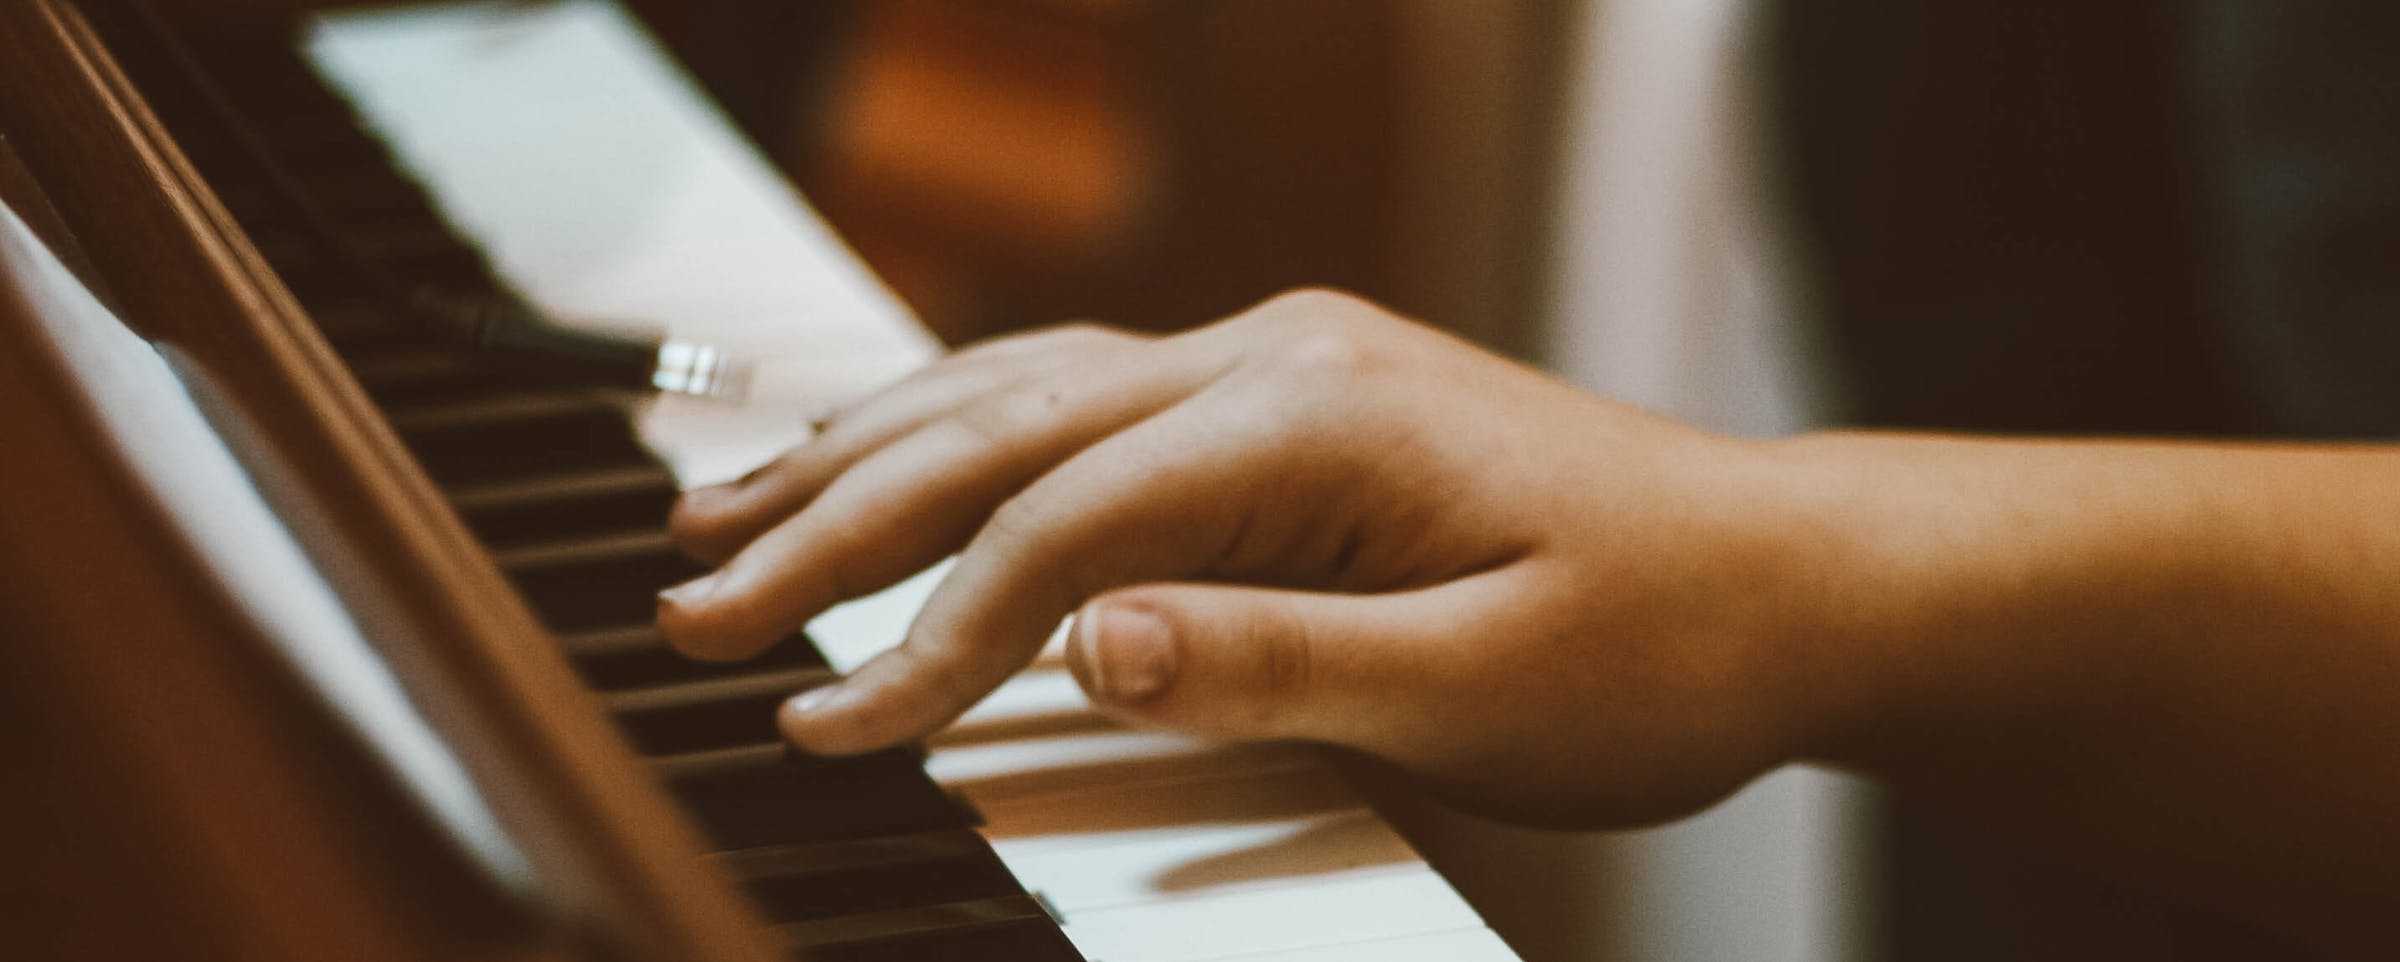 Comment apprendre à jouer du piano ? La marche à suivre du pianiste  débutant. — Elpiano